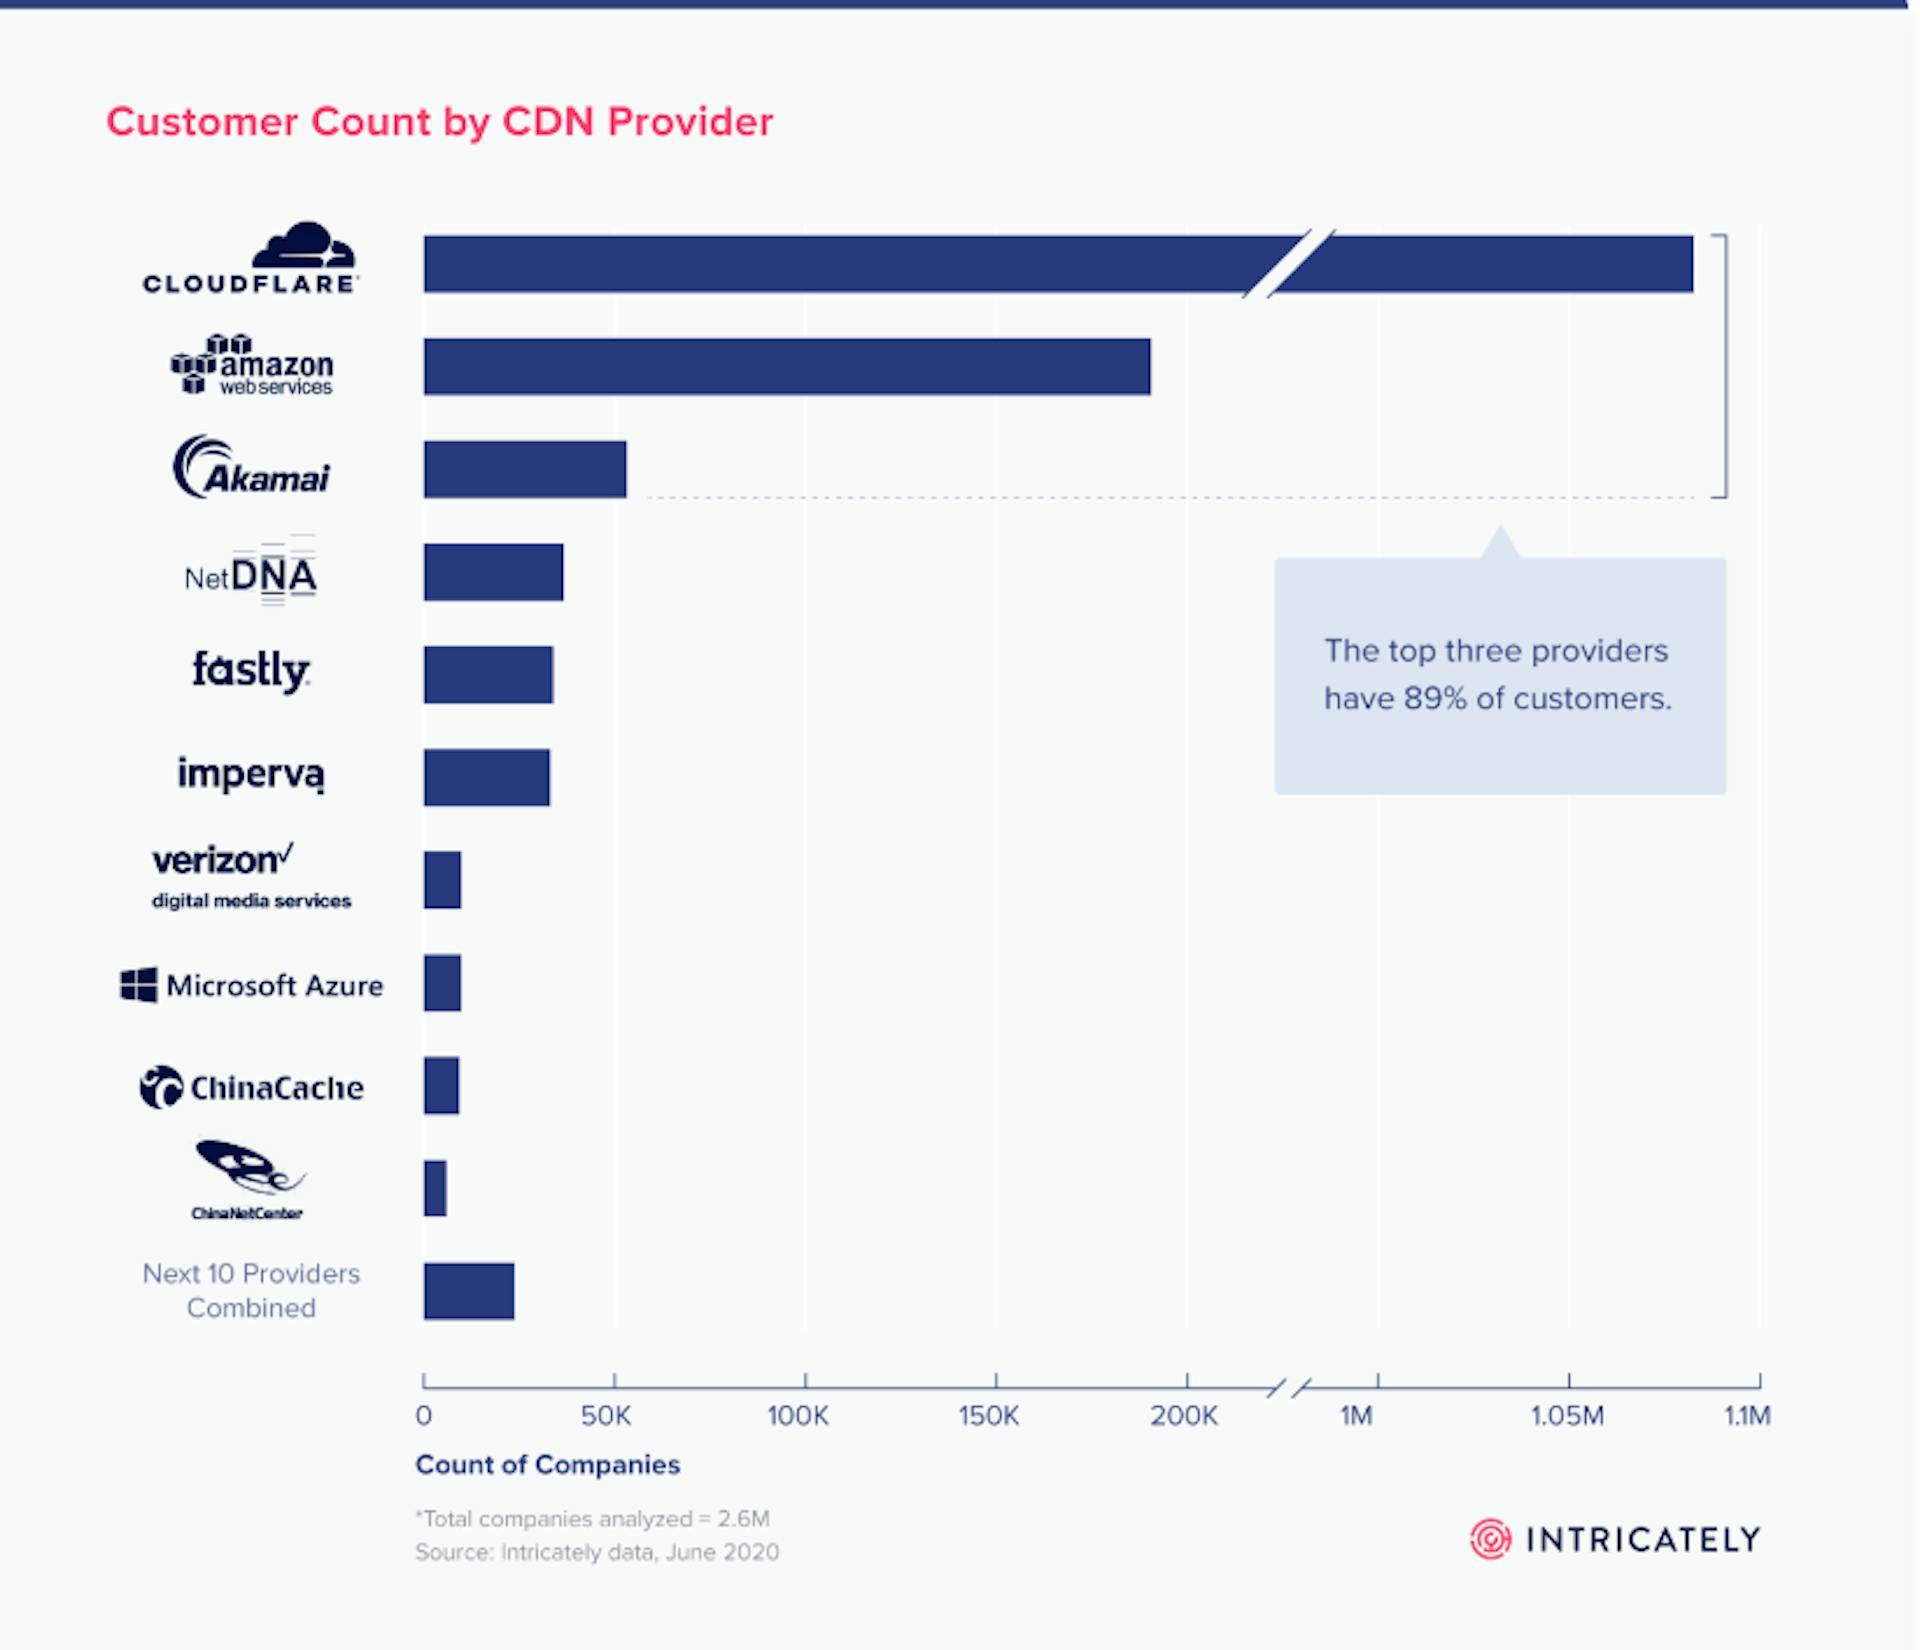 CDN providers' market shares